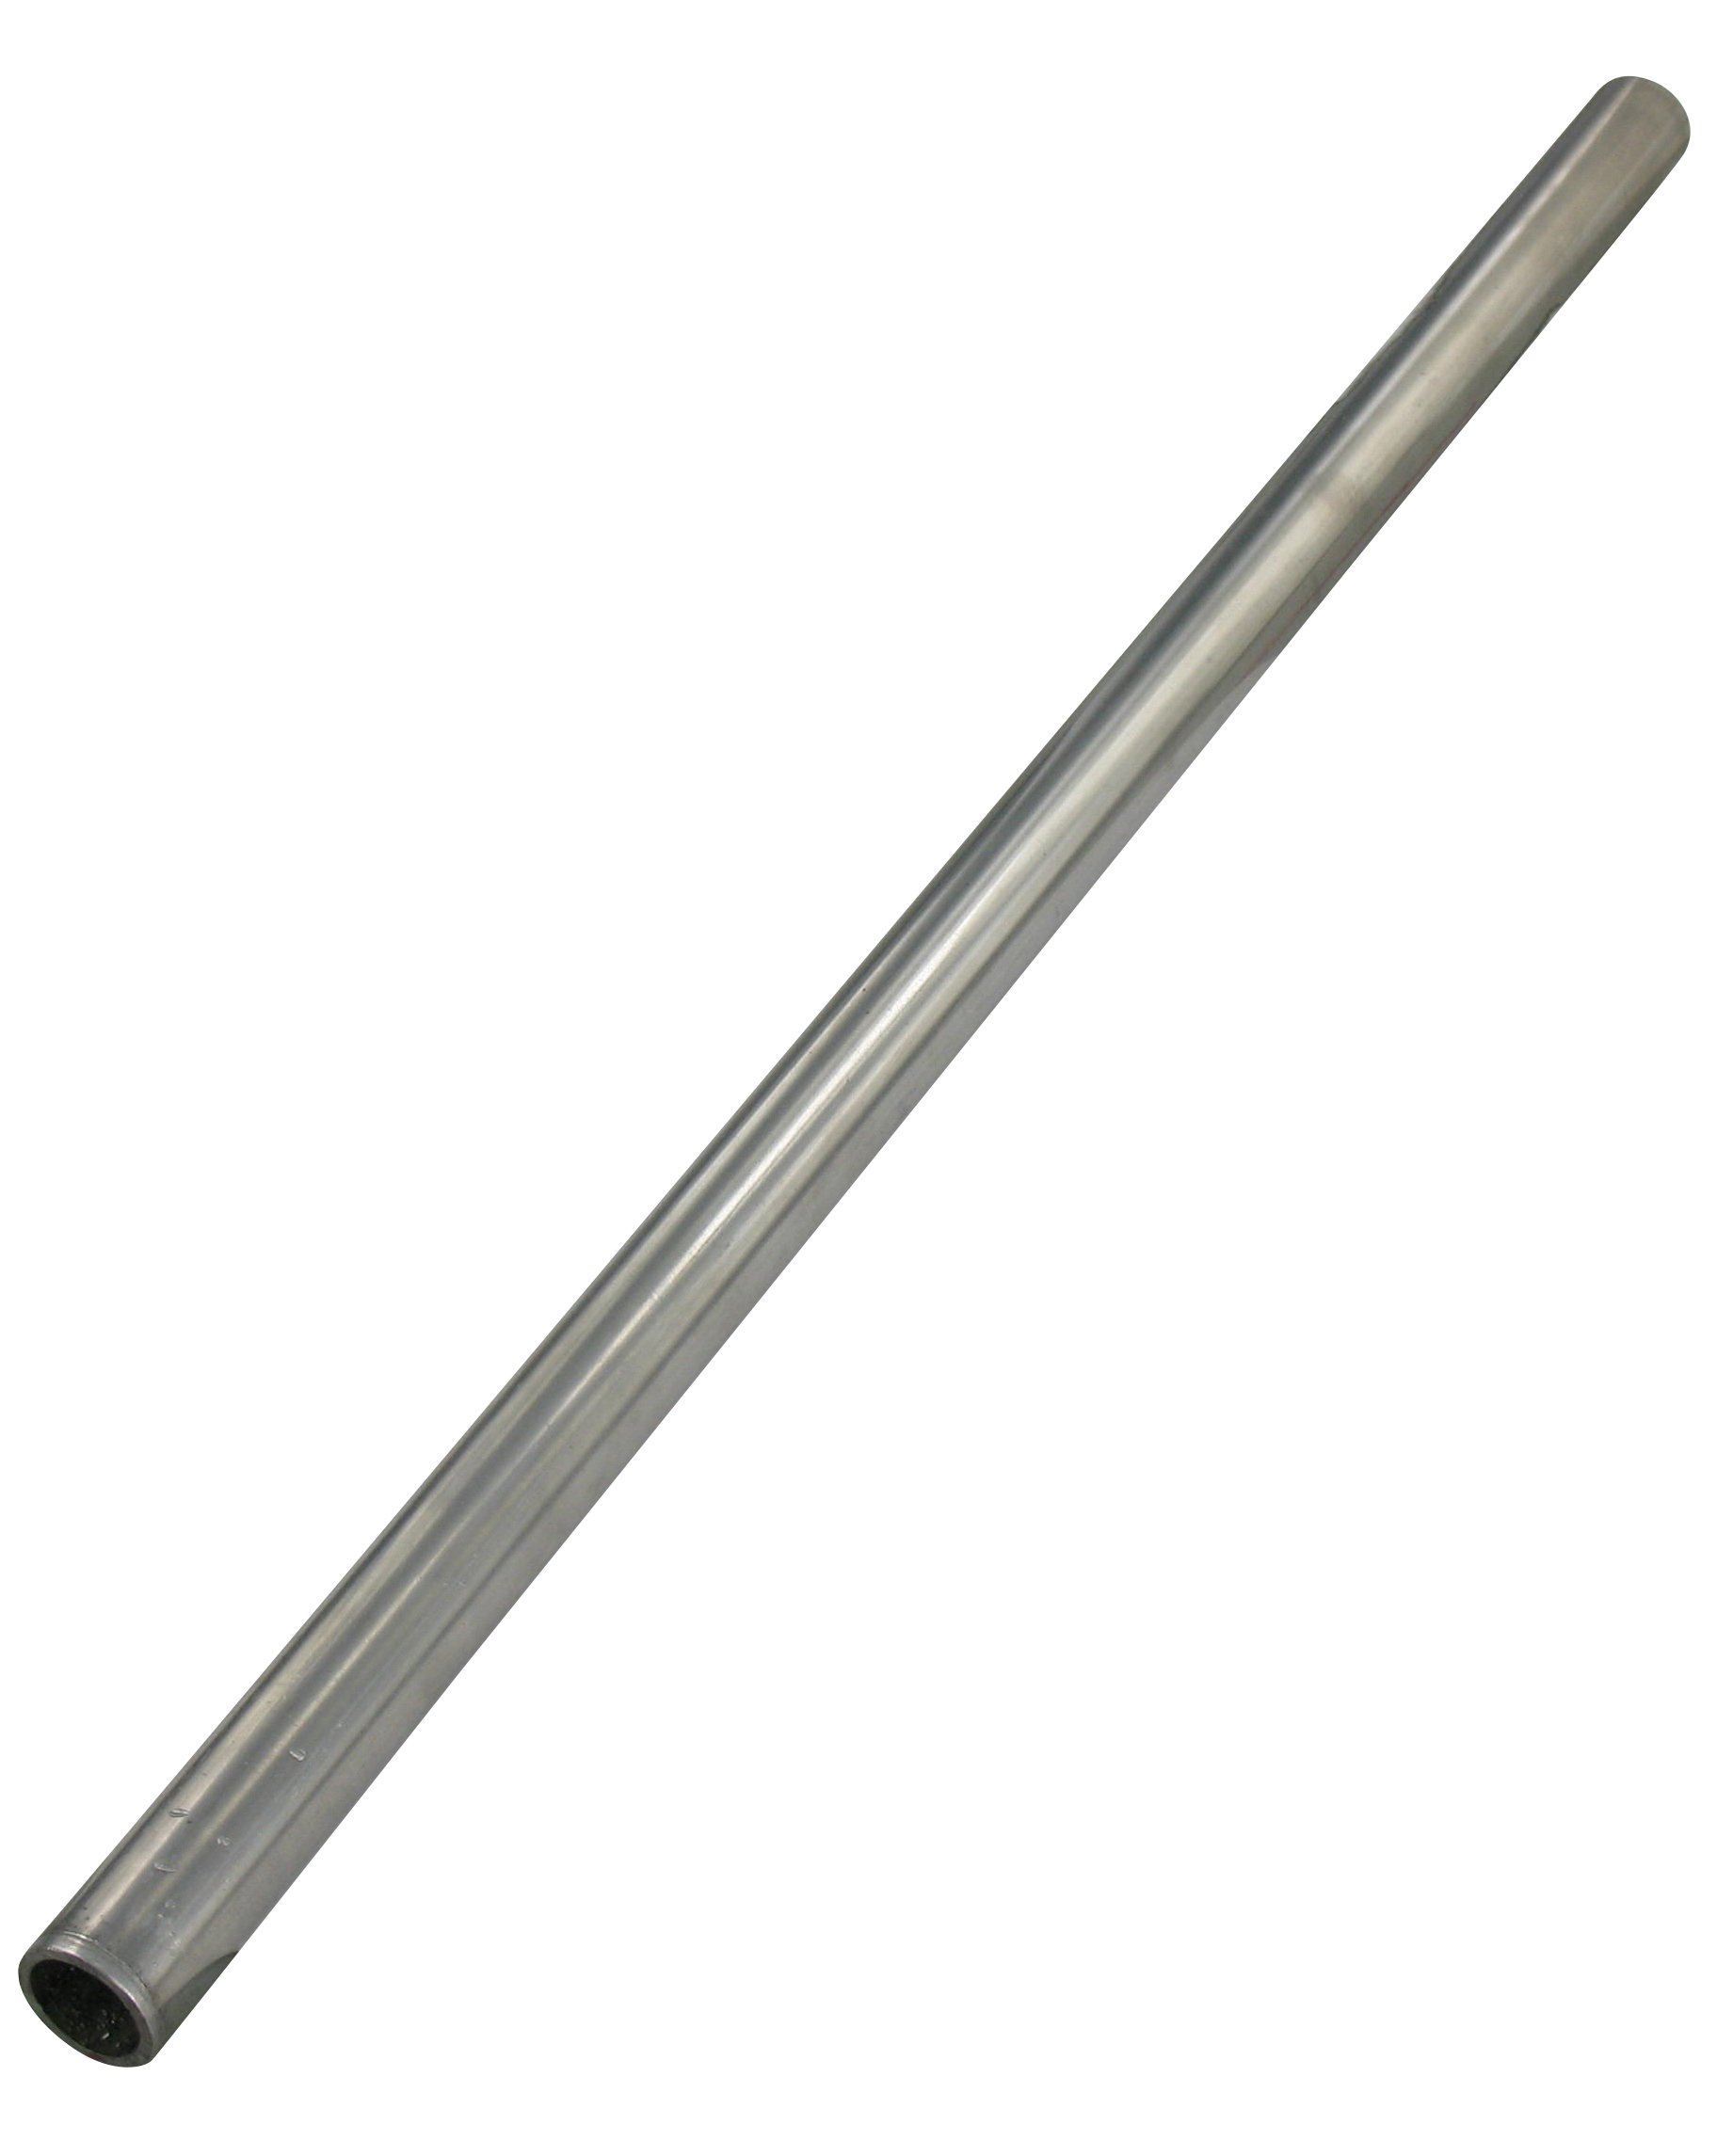 Achse aus Stahl Ø20 x 1,5 x 1000 mm H9 blank